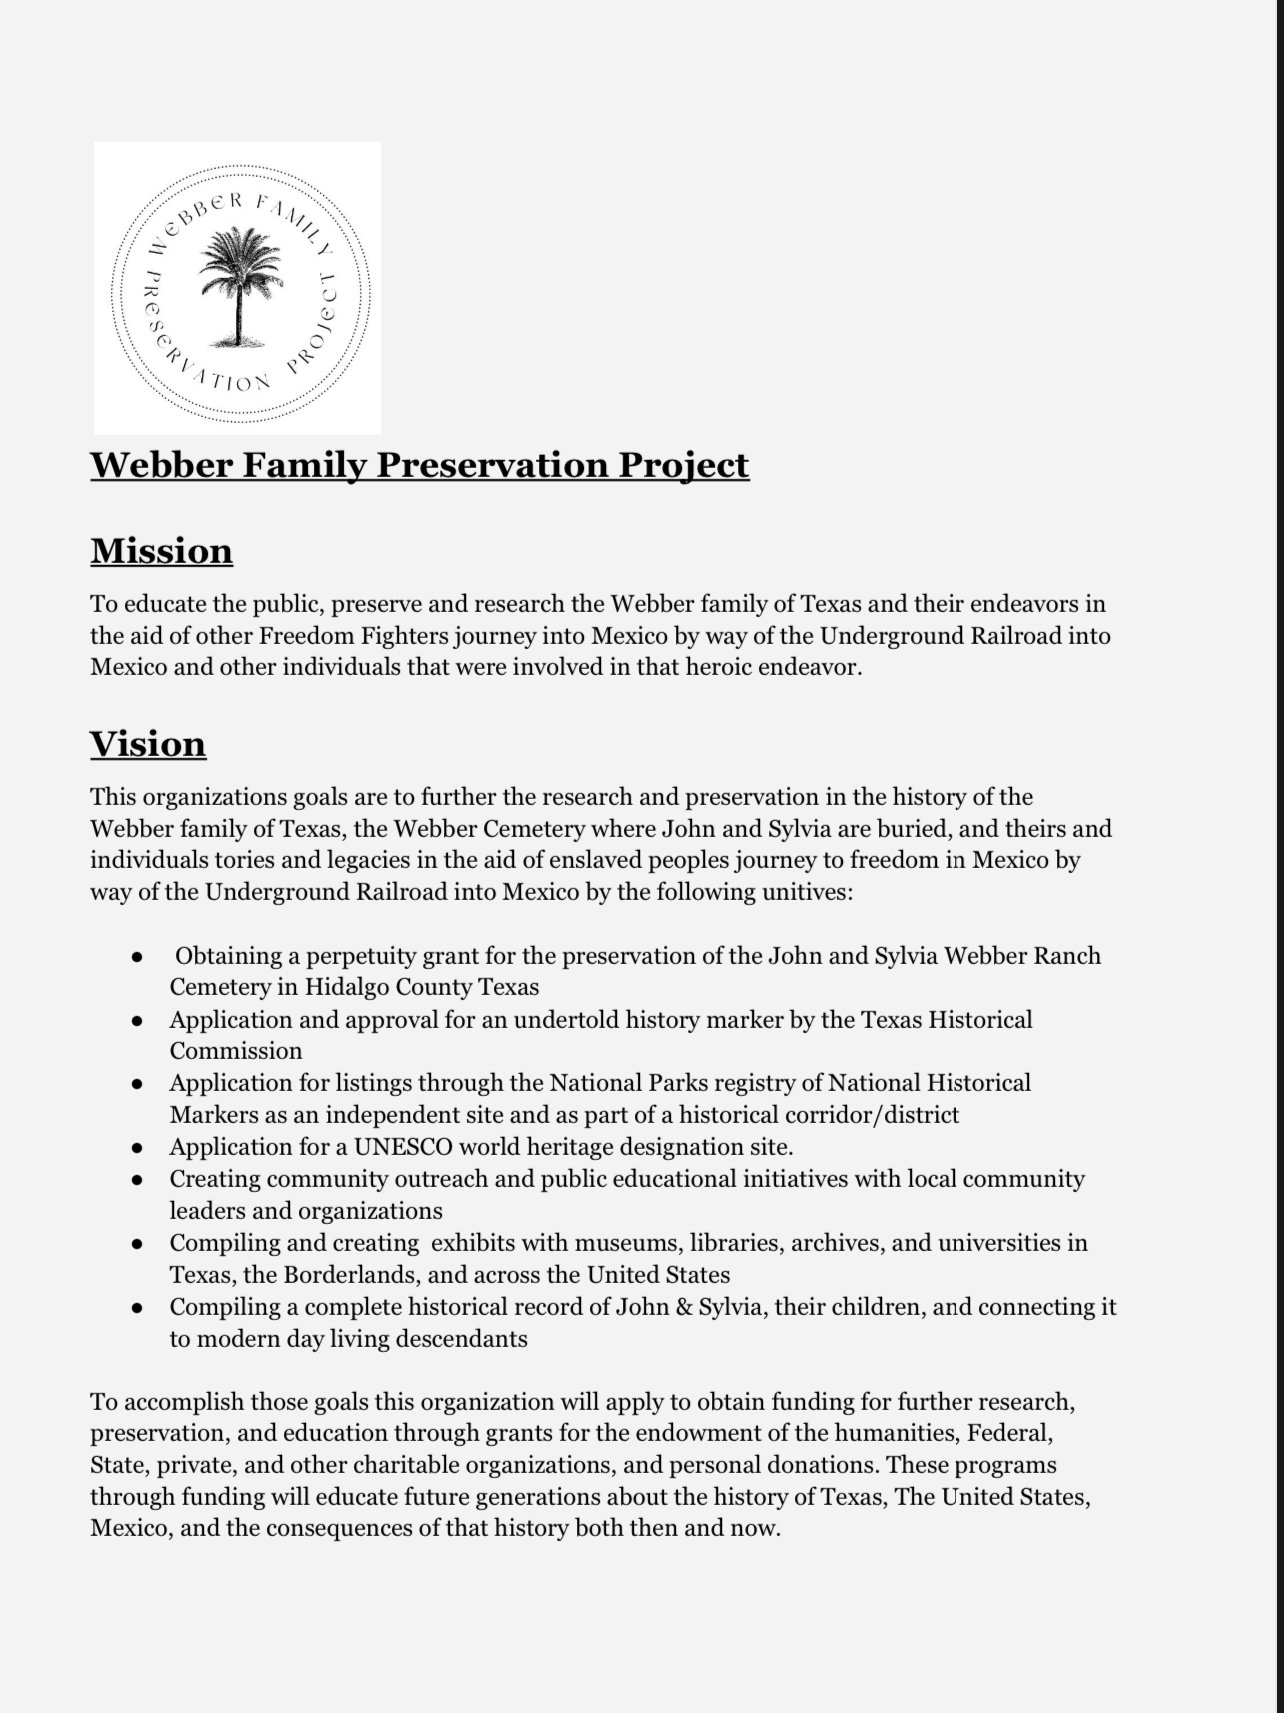 Webber family preservation board mission - Leslie Trevino.jpeg